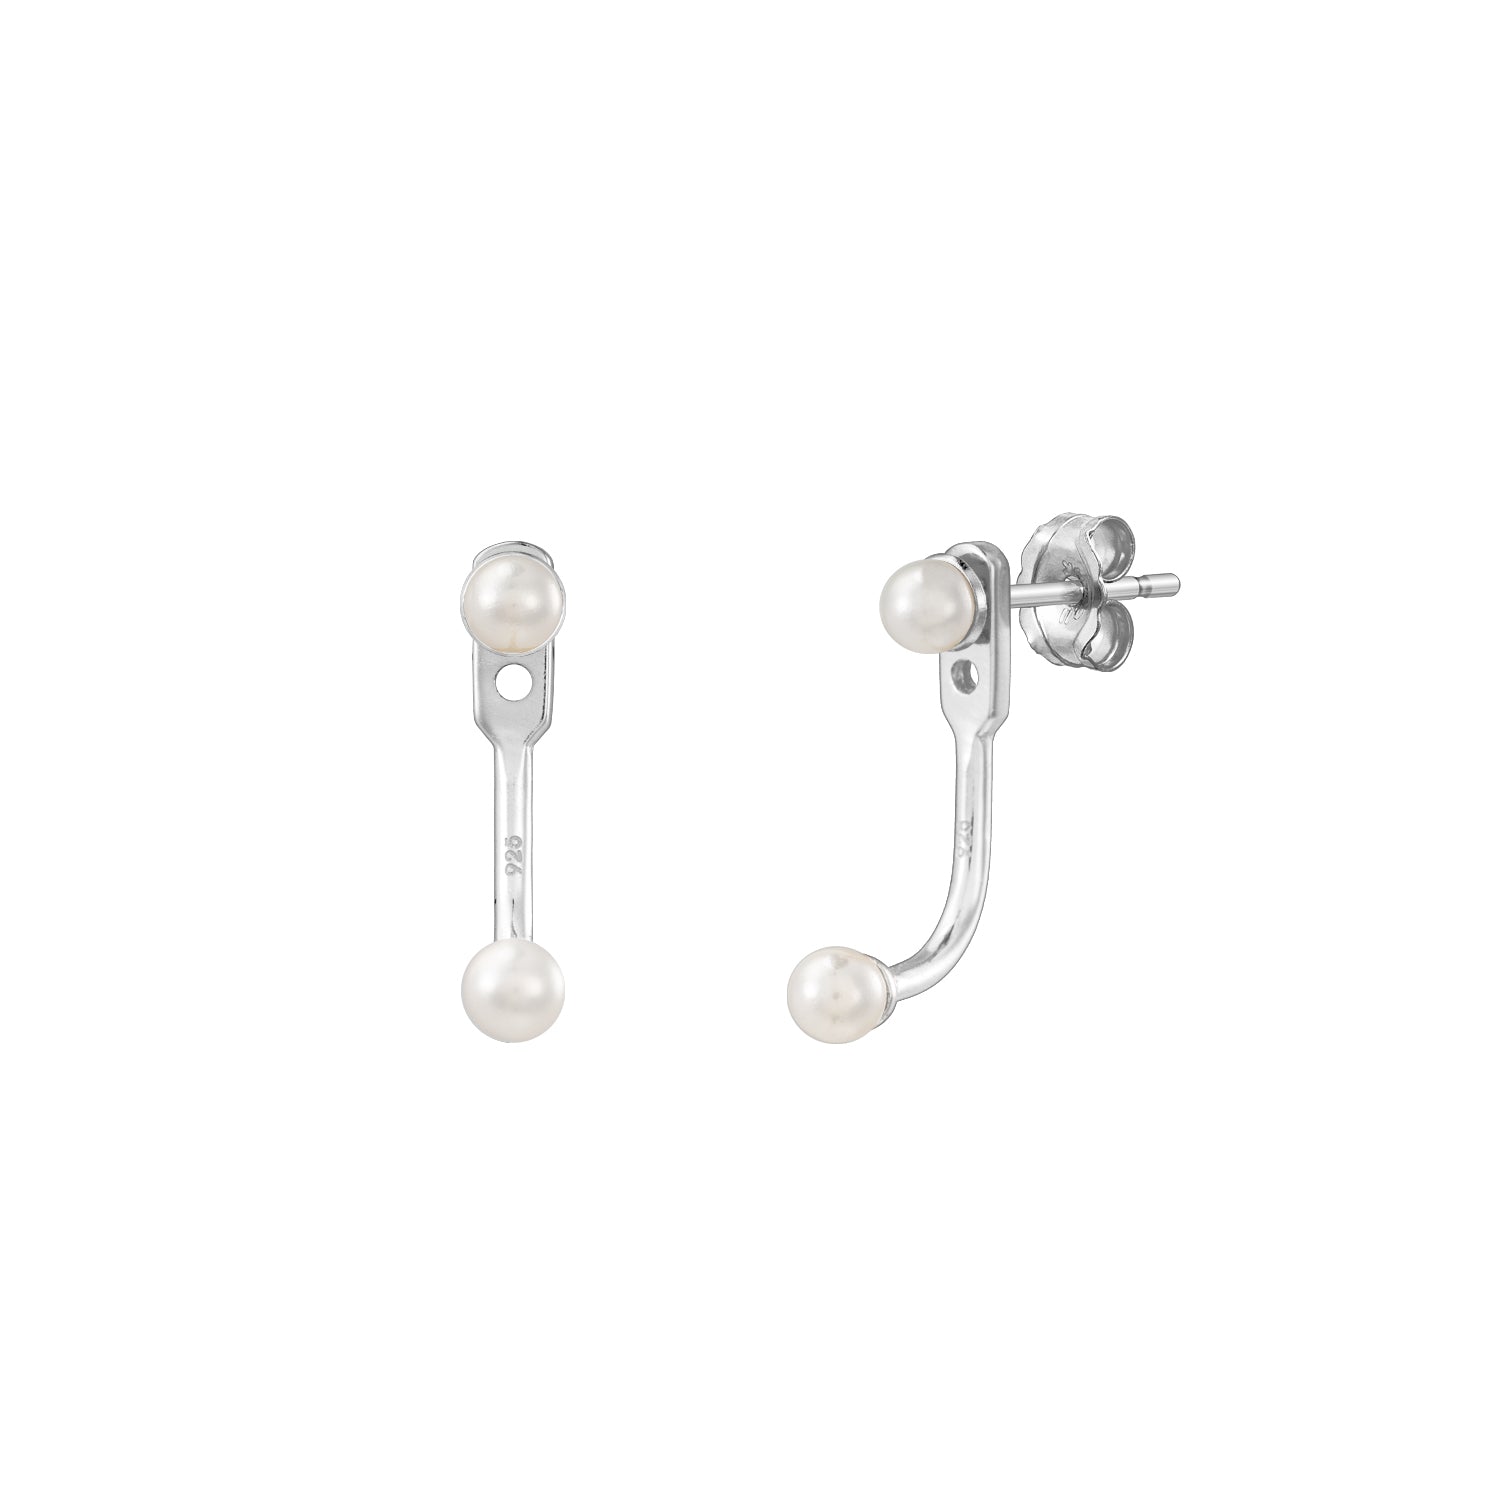 J&CO Jewellery Mini Pearl Double Ear Jacket Silver